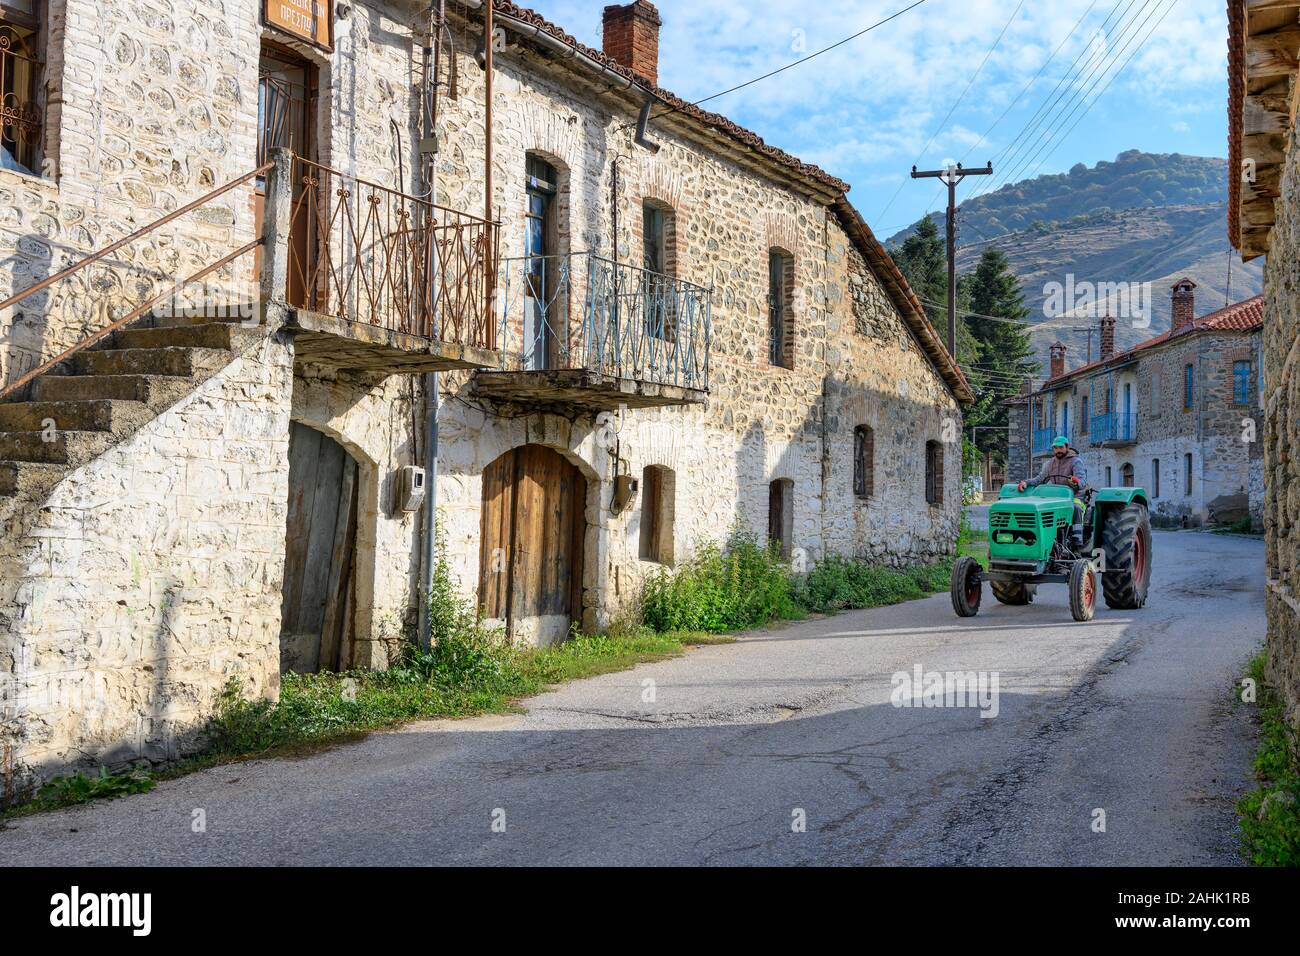 Die alten Häuser an der Hauptstraße, in dem kleinen Dorf Agios Germanos nahe Lake Prespa in der Gemeinde Prespes, Mazedonien, im Norden Griechenlands. Stockfoto